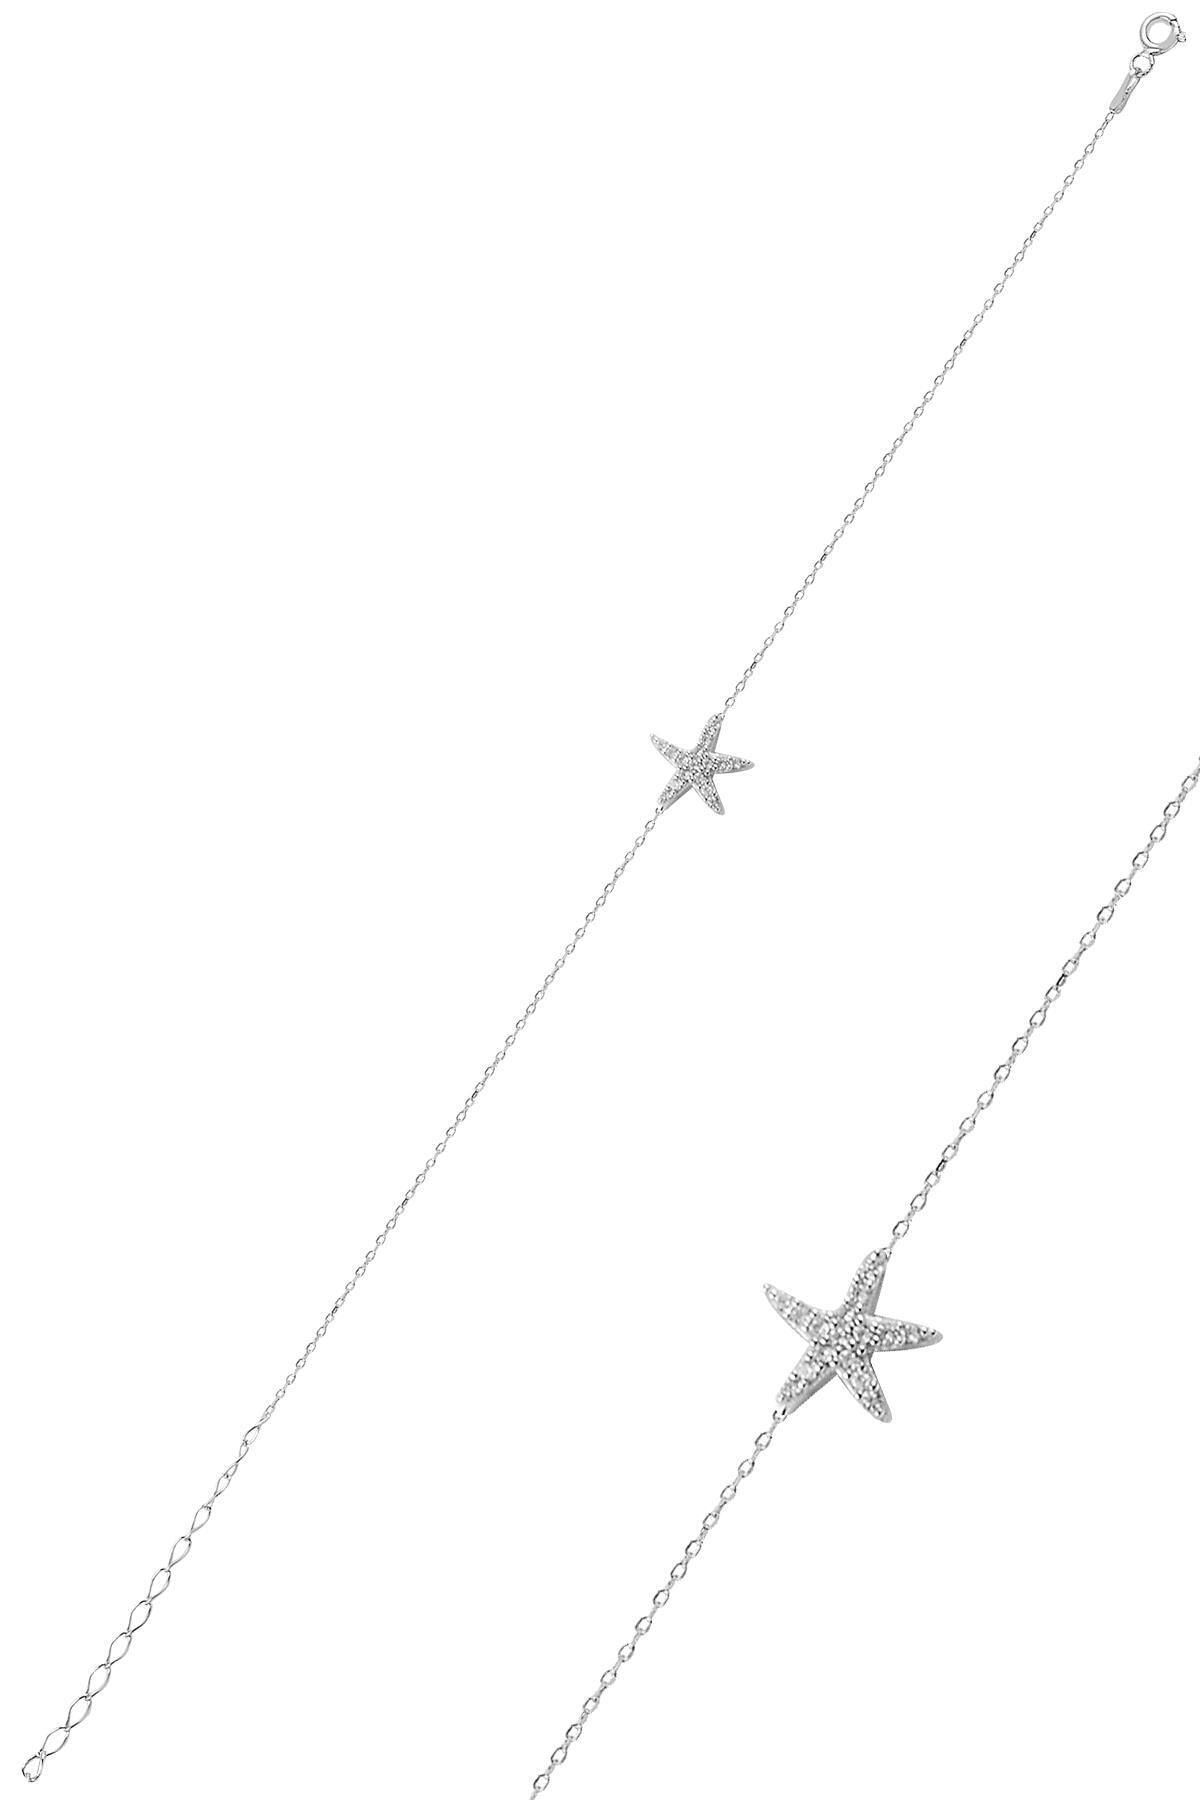 Söğütlü Silver Gümüş Zirkon Taşlı Deniz Yıldızı Modeli Bileklik Sgtl10094rodaj